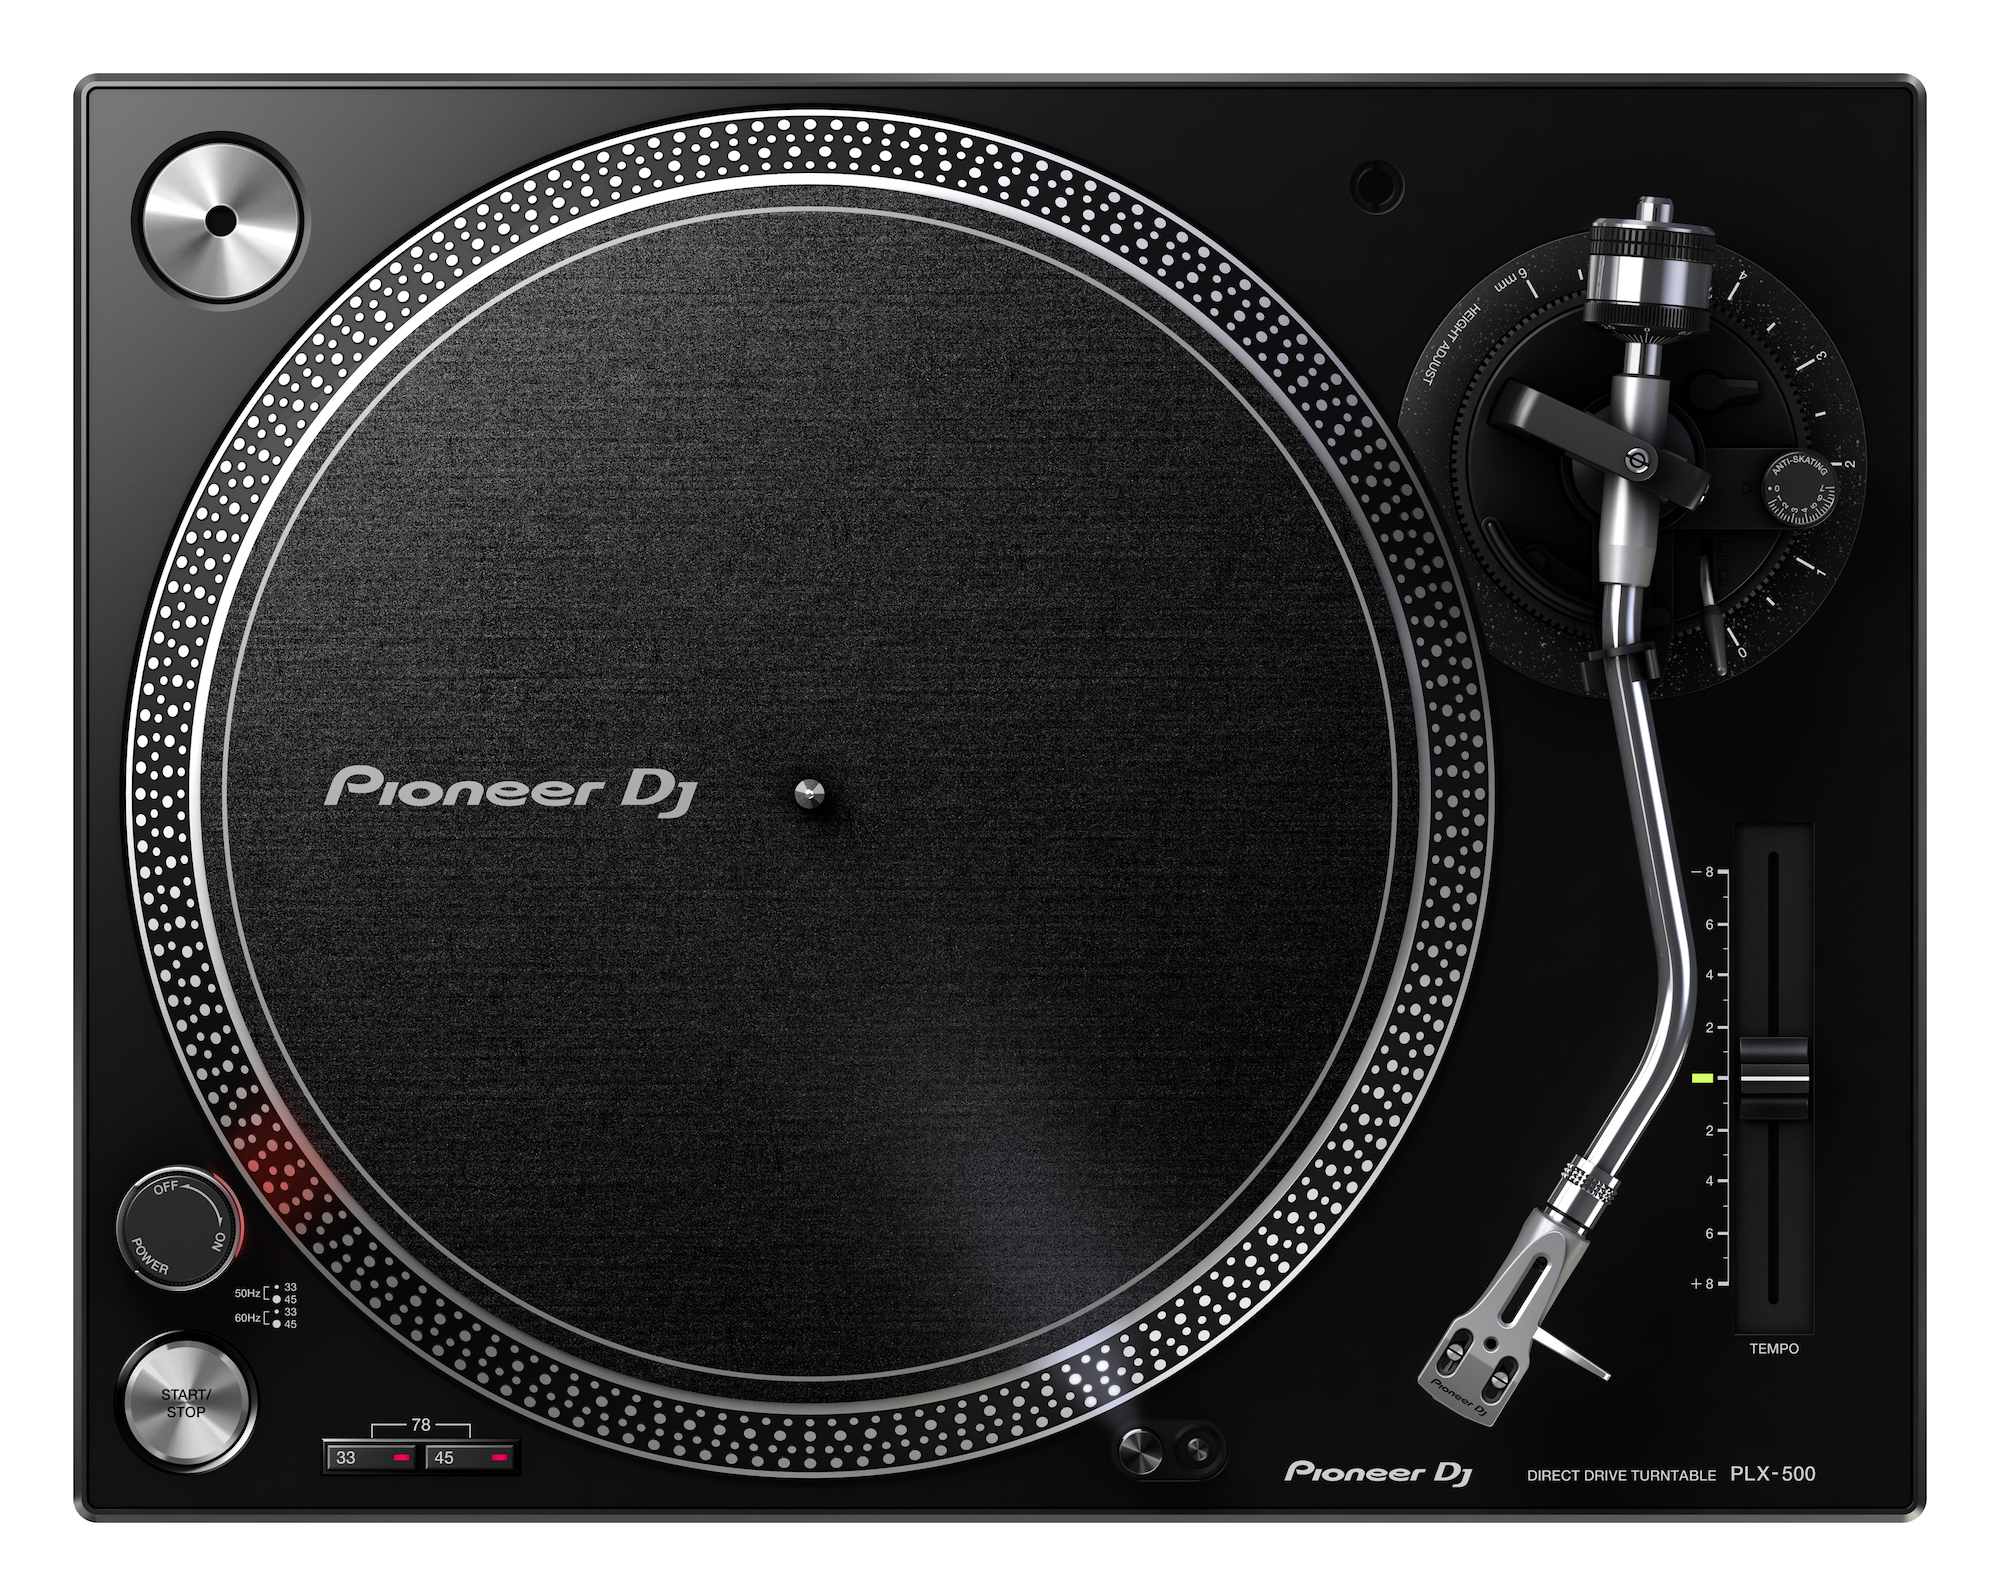 Nuevo plato Pioneer PLX-500 para DJs y amantes de los vinilos